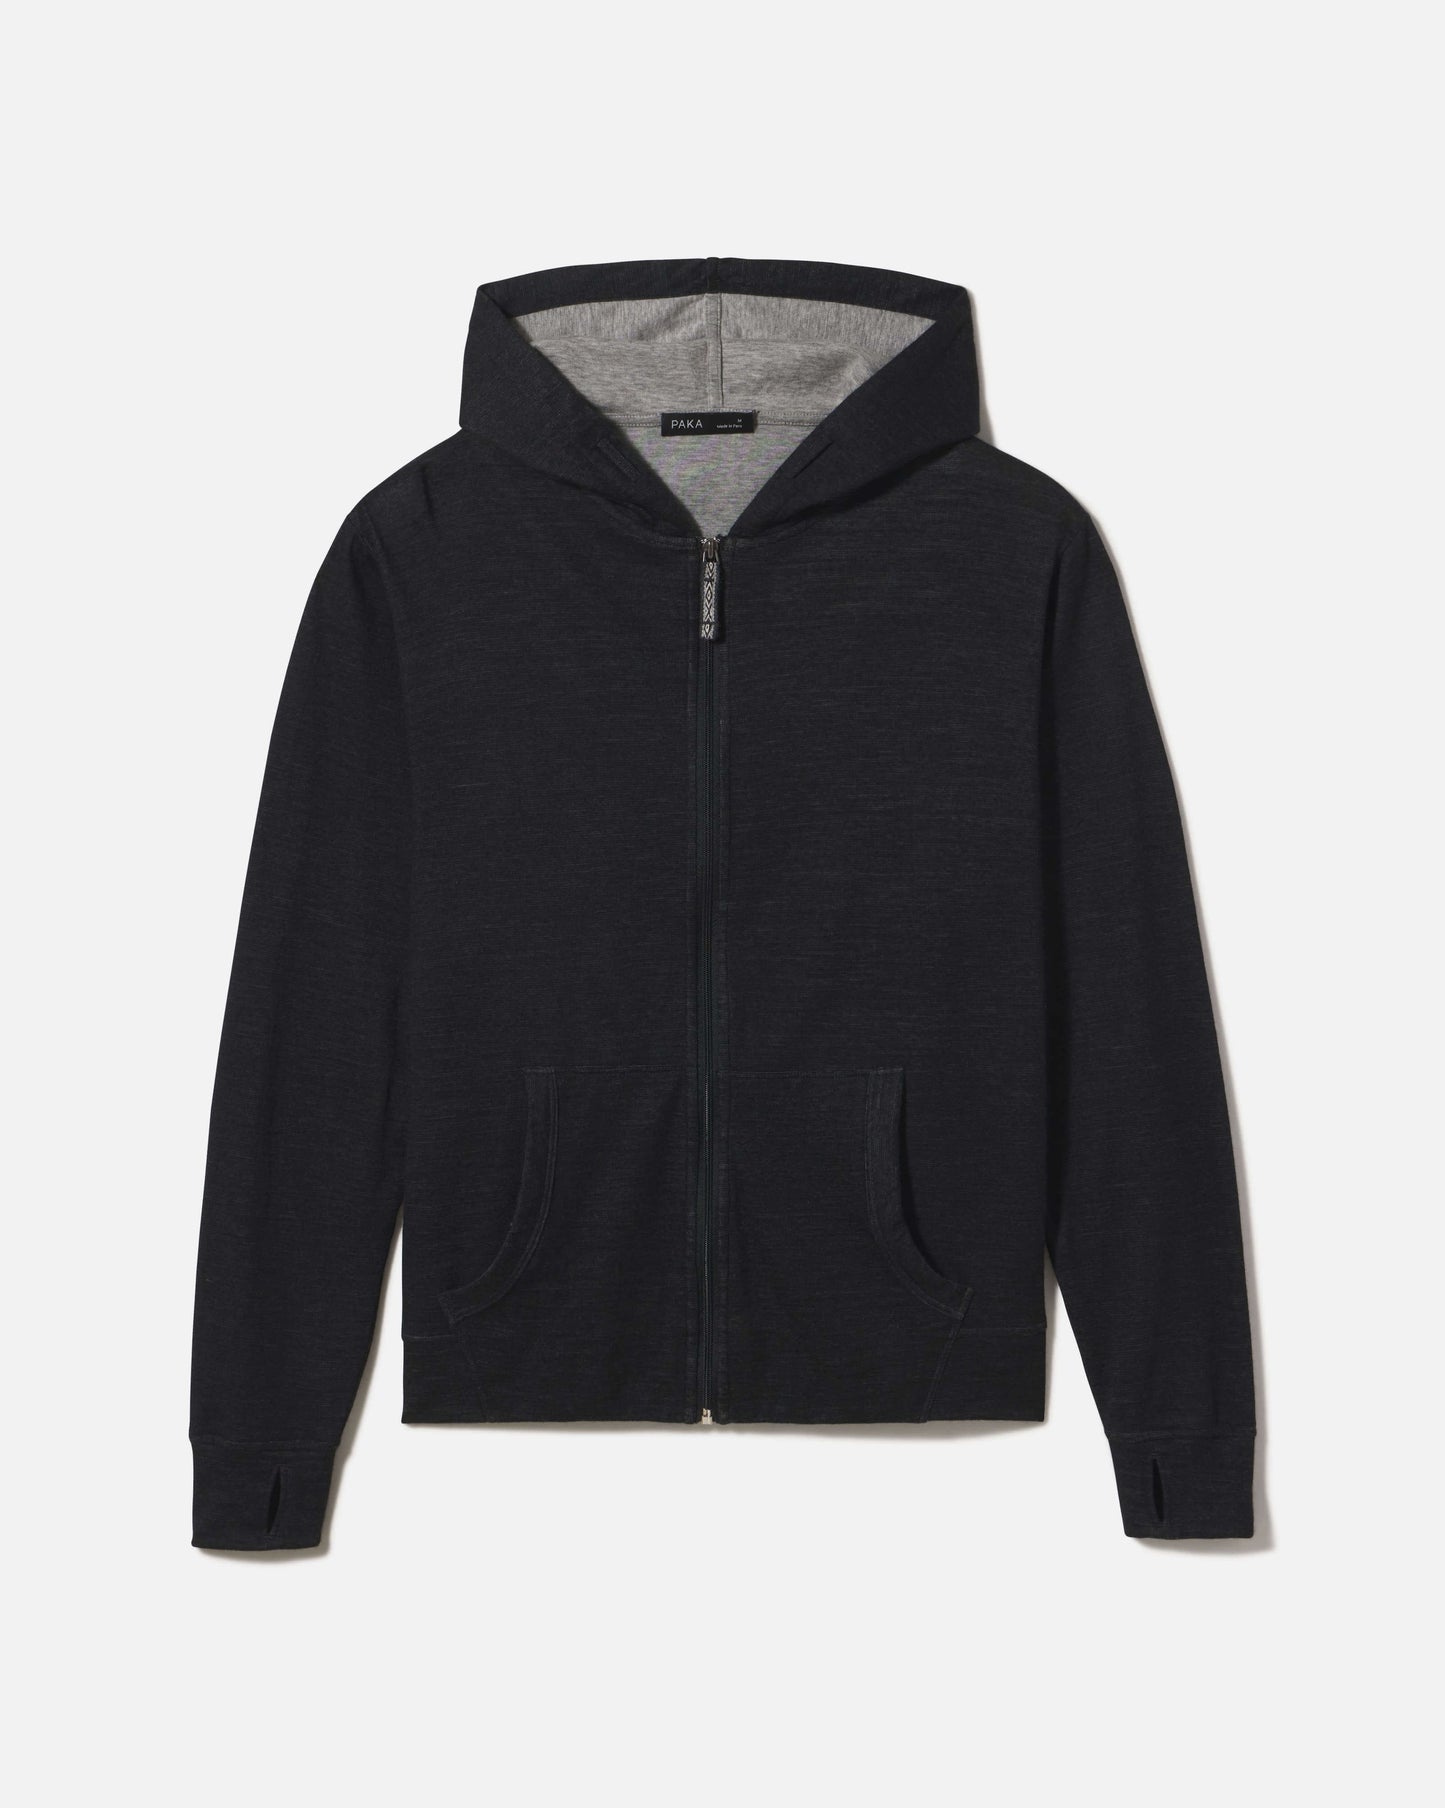 Men's black alpaca hoodie with grey interior 